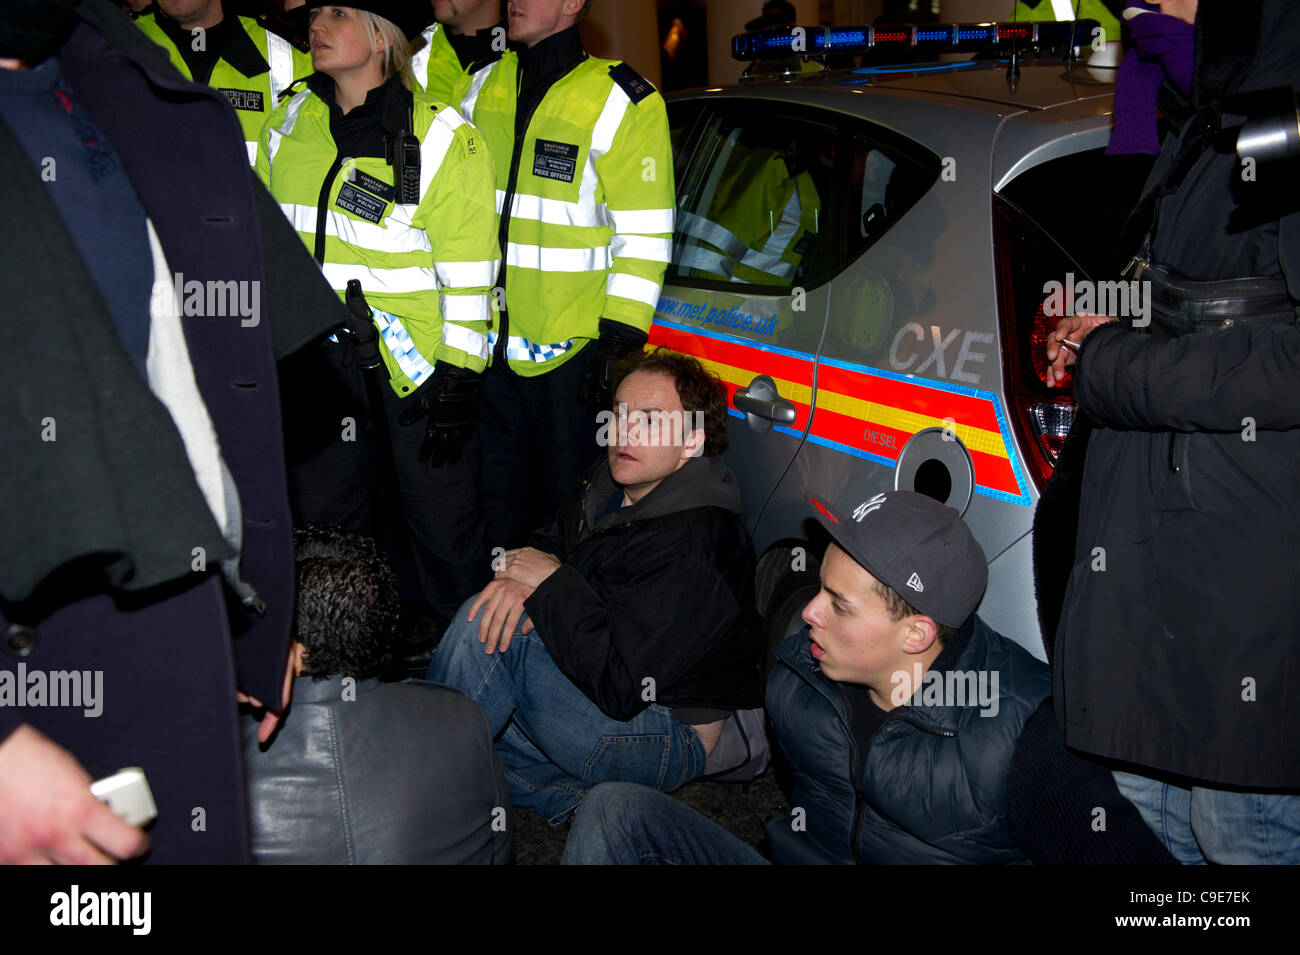 30 Nov 2011, Haymarket, Londres. Los manifestantes intentan bloquear la carretera para impedir que un vehículo de la policía dejando conteniendo prisioneros que fueron arrestados durante la breve ocupación de Panton House de Londres. El sentarse protesta fue breve y la policía pasó rápidamente a los manifestantes. Foto de stock